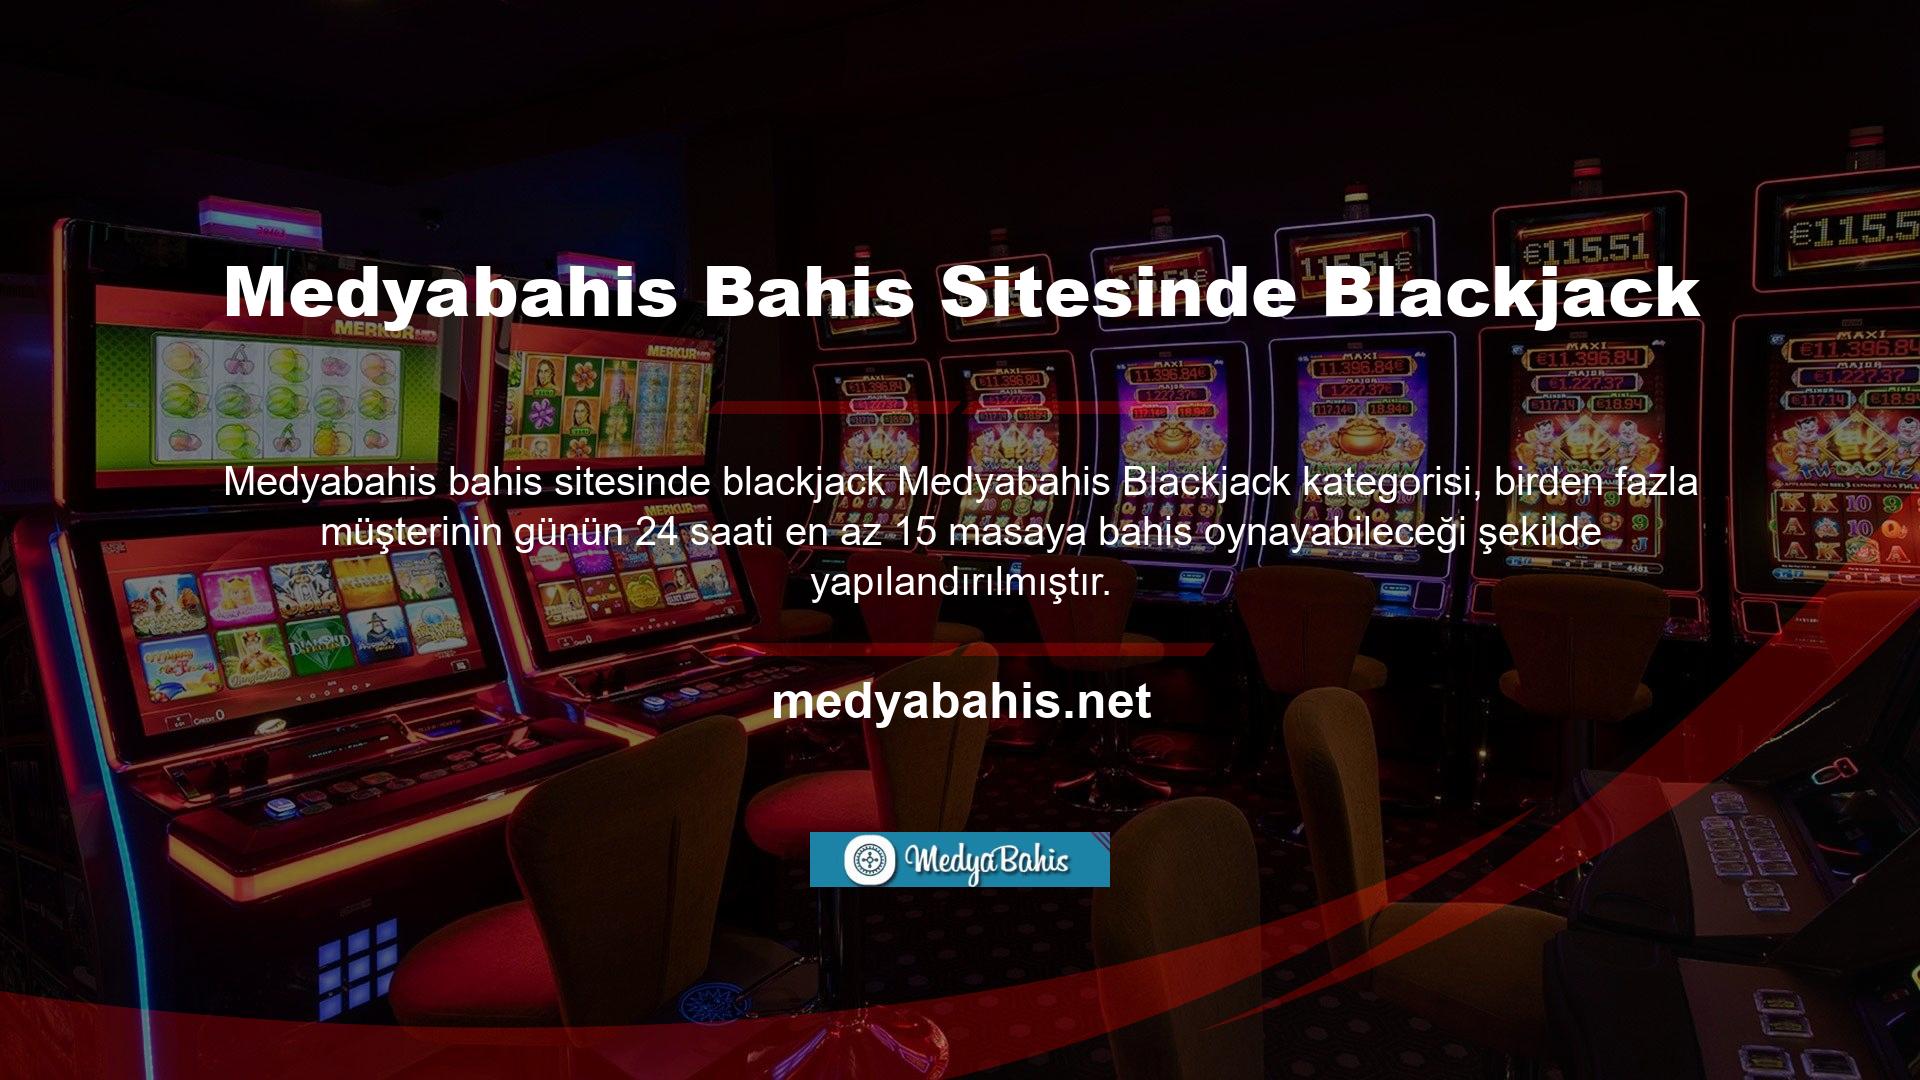 Oyun, site hesap sahibinin diline bağlı olarak günlük olarak Türkçe ve İngilizce olarak oynanabilmektedir